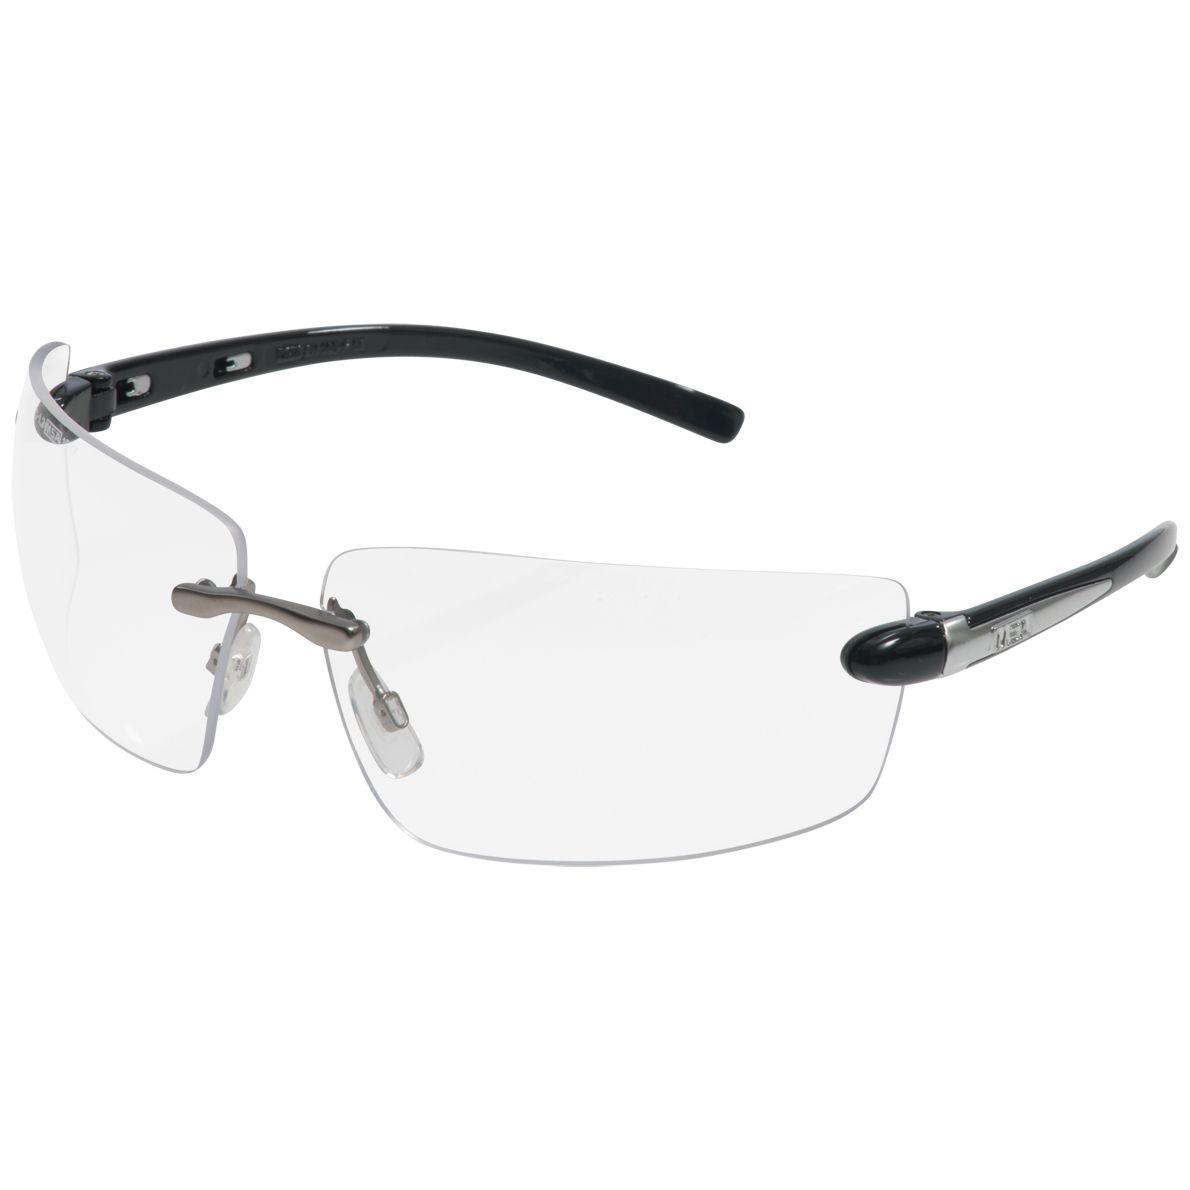 MSA Alaska Schutzbrille - kratz- & beschlagfeste Modelle mit verschiedenen Scheibenfarben - EN 166/170/172